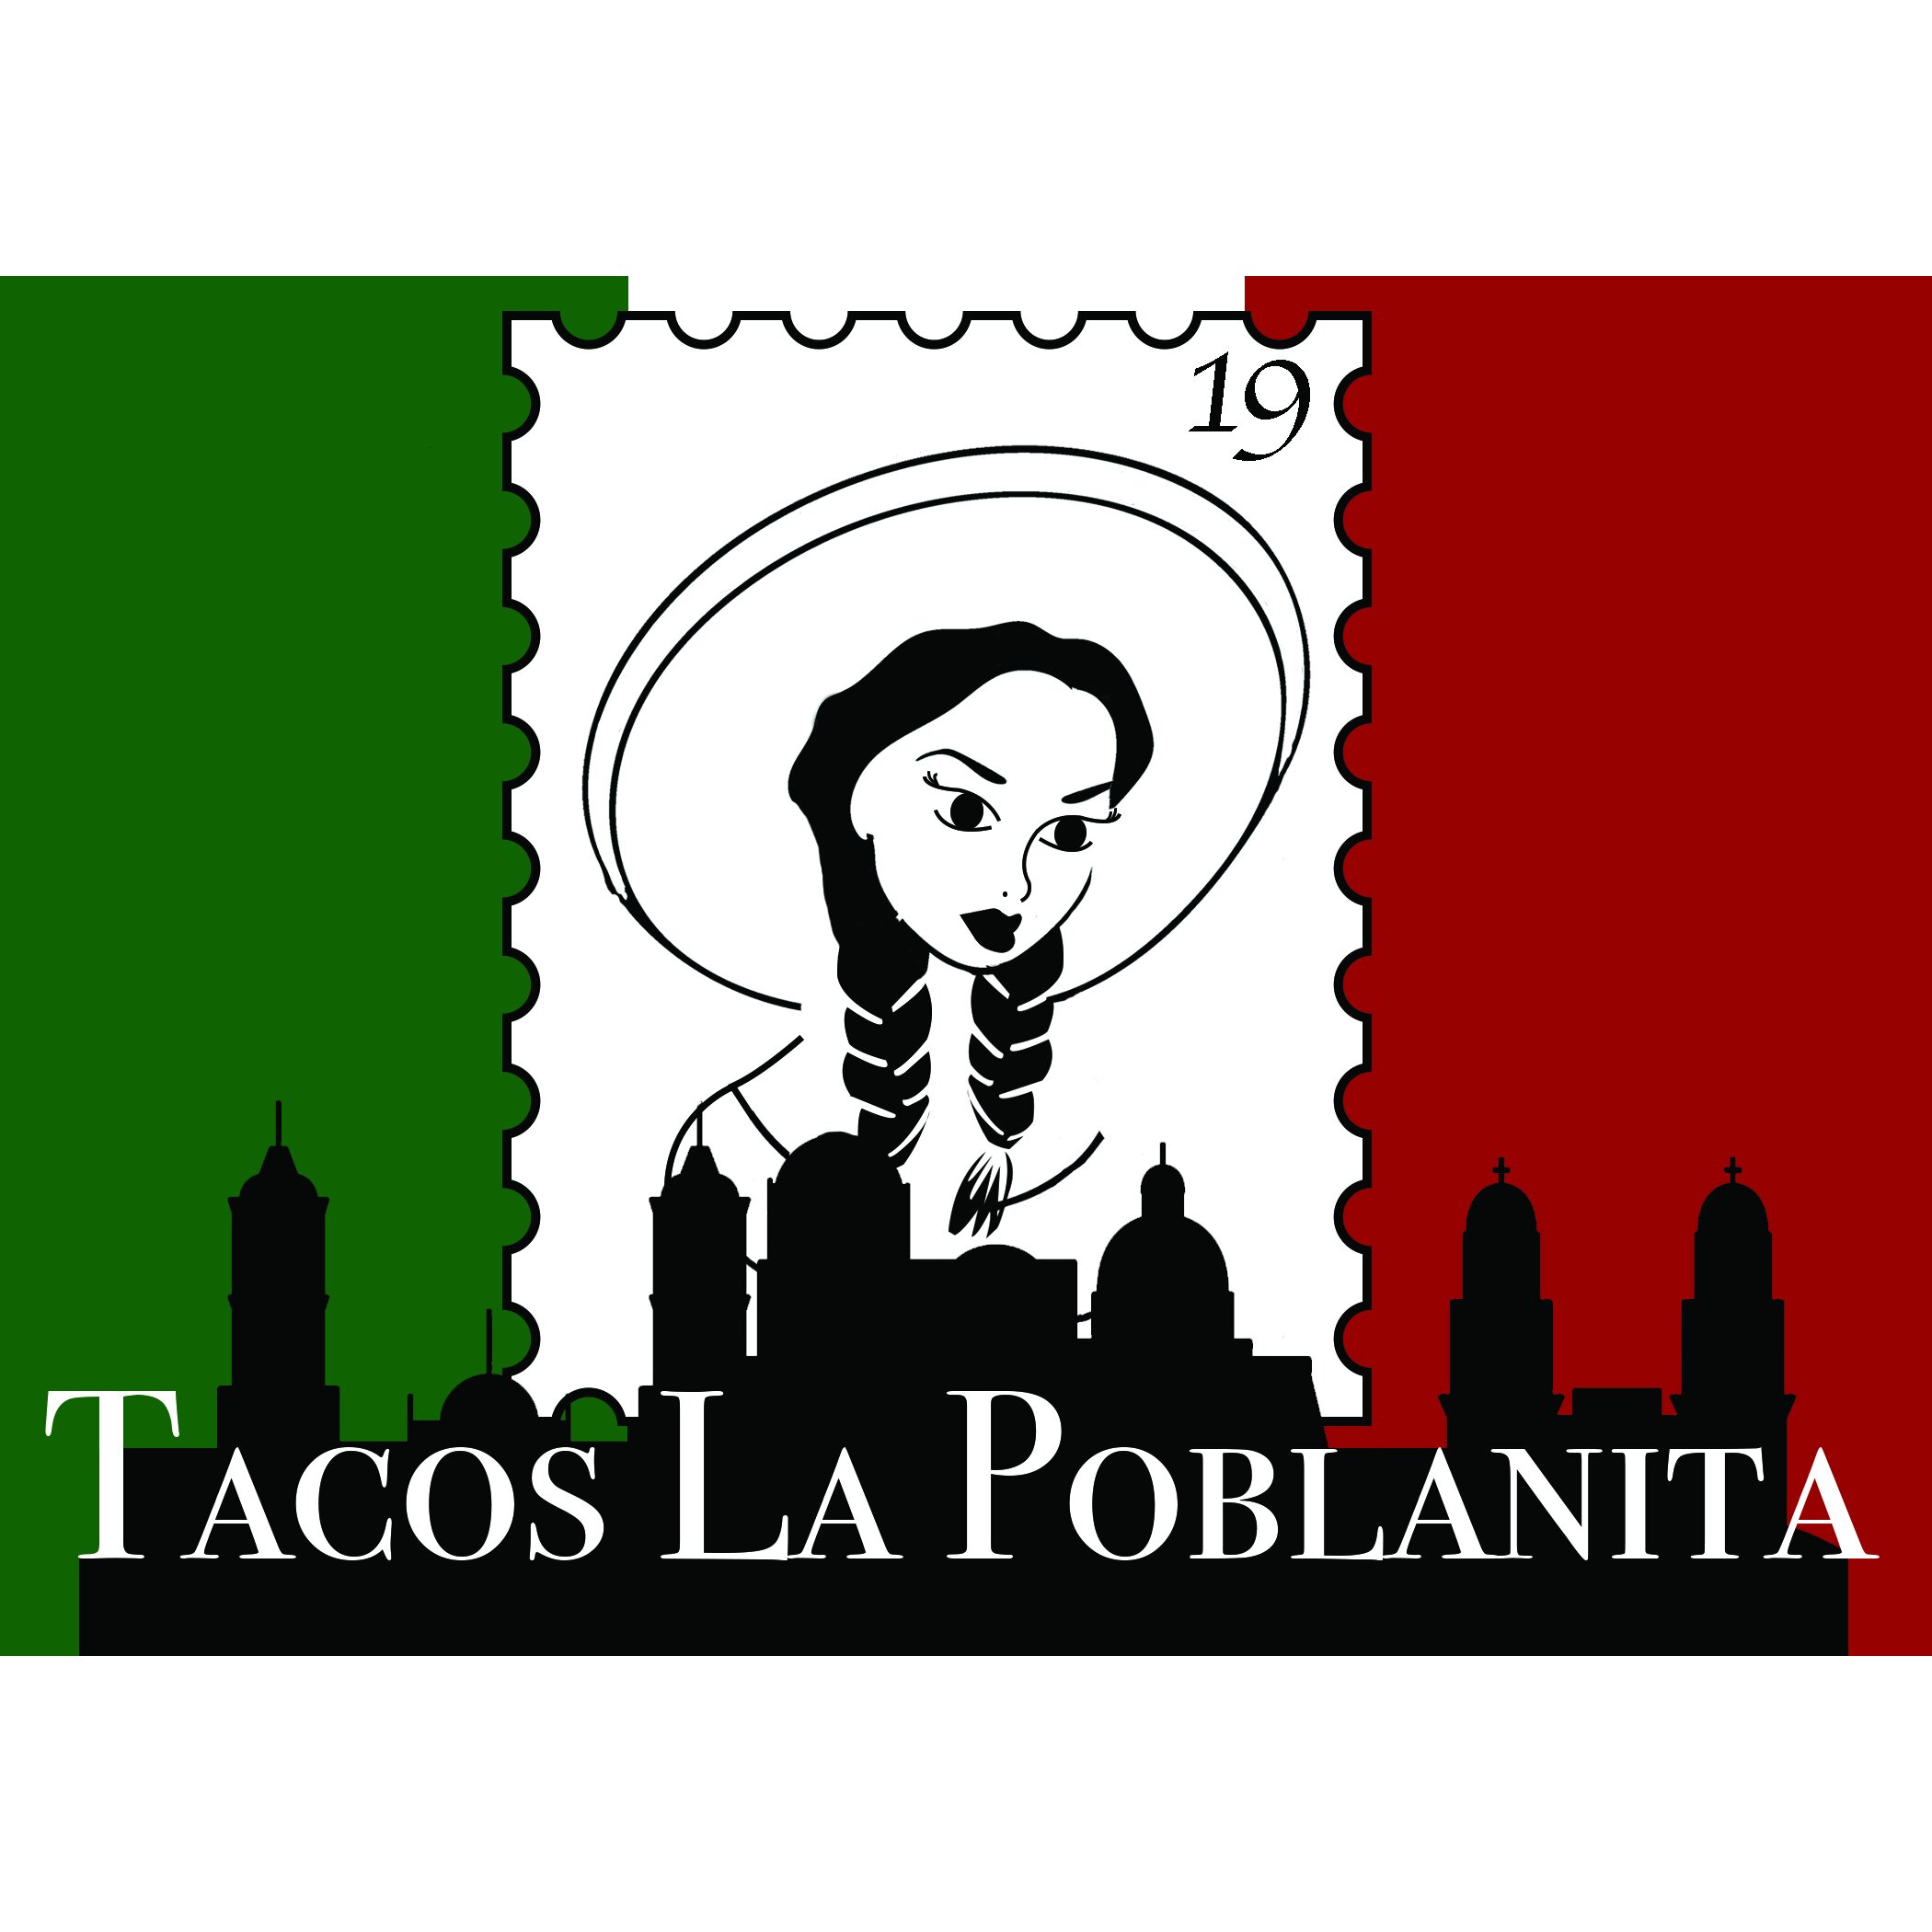 Tacos La Poblanita Logo CMYK FINAL copy.jpg